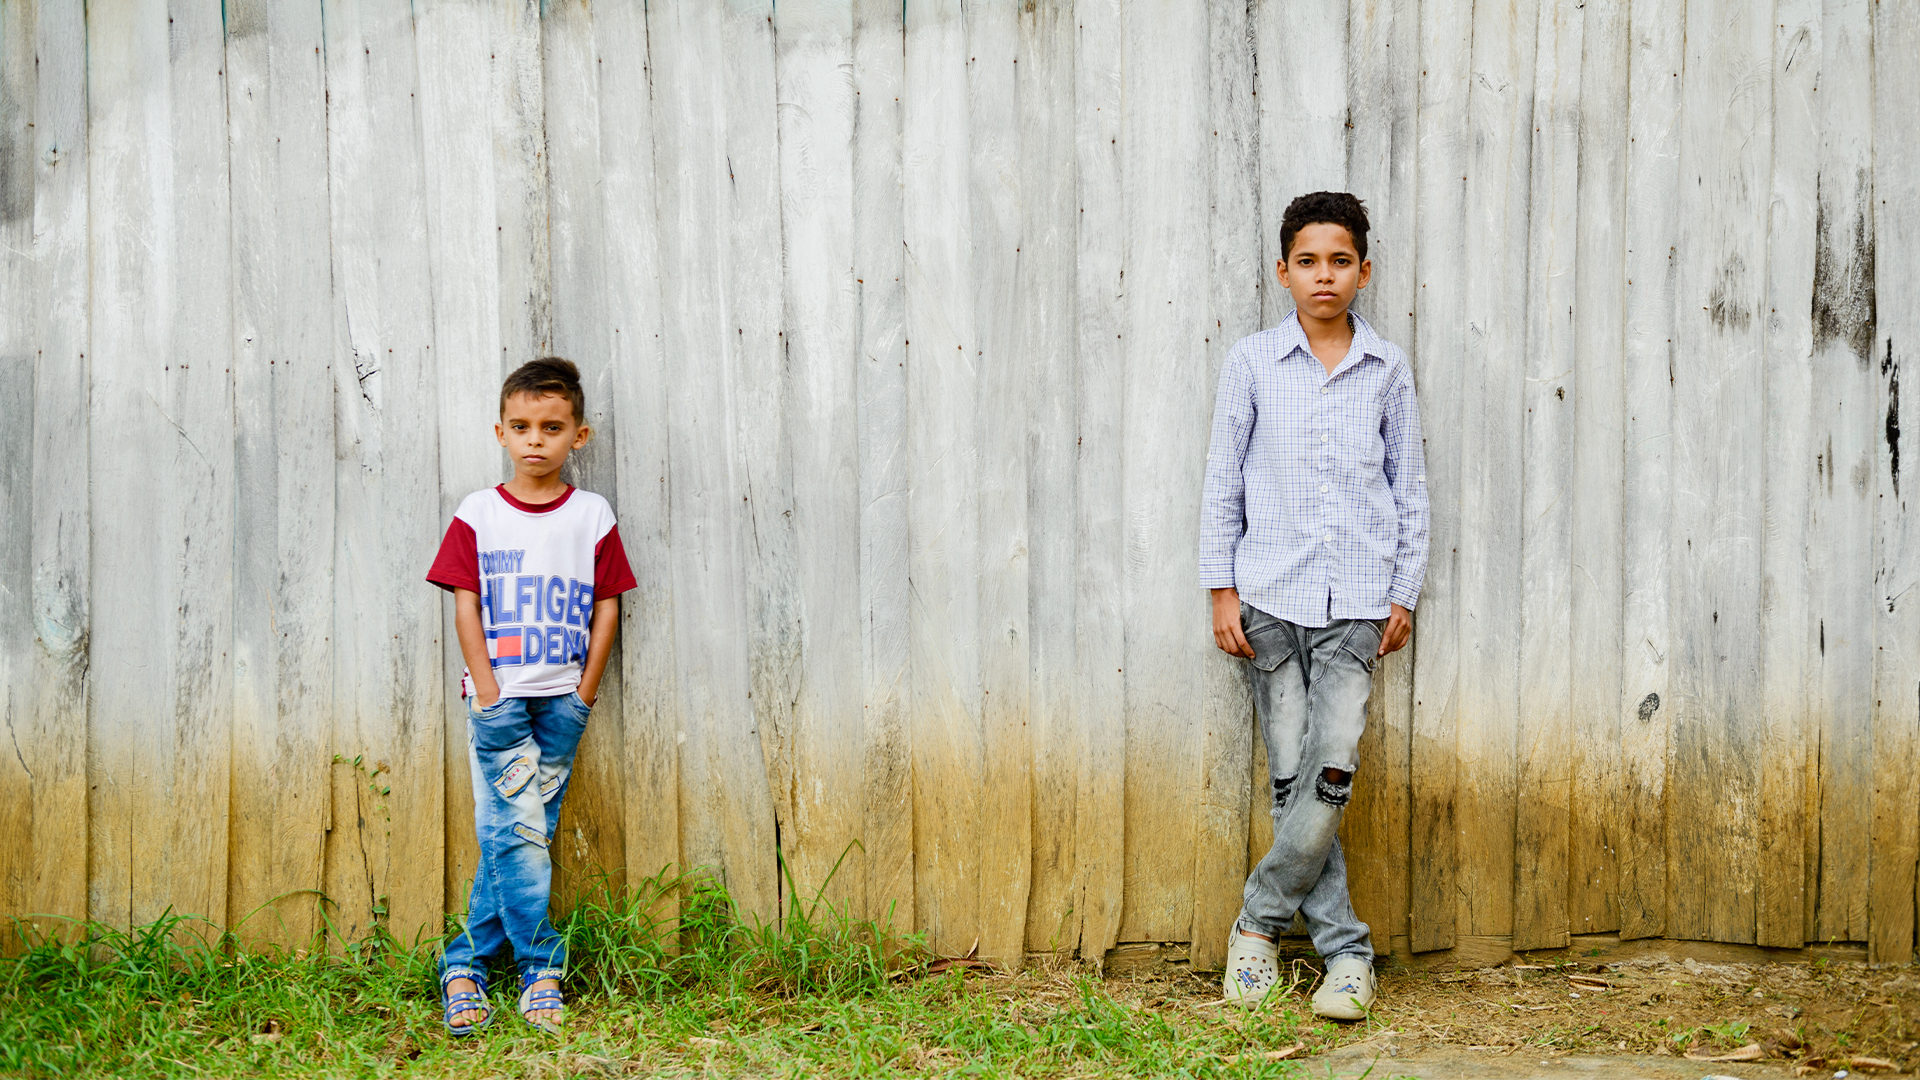 El trabajo infantil, un fenómeno que afecta a cerca de 1.7 millones de niños y niñas en Colombia Banner Image